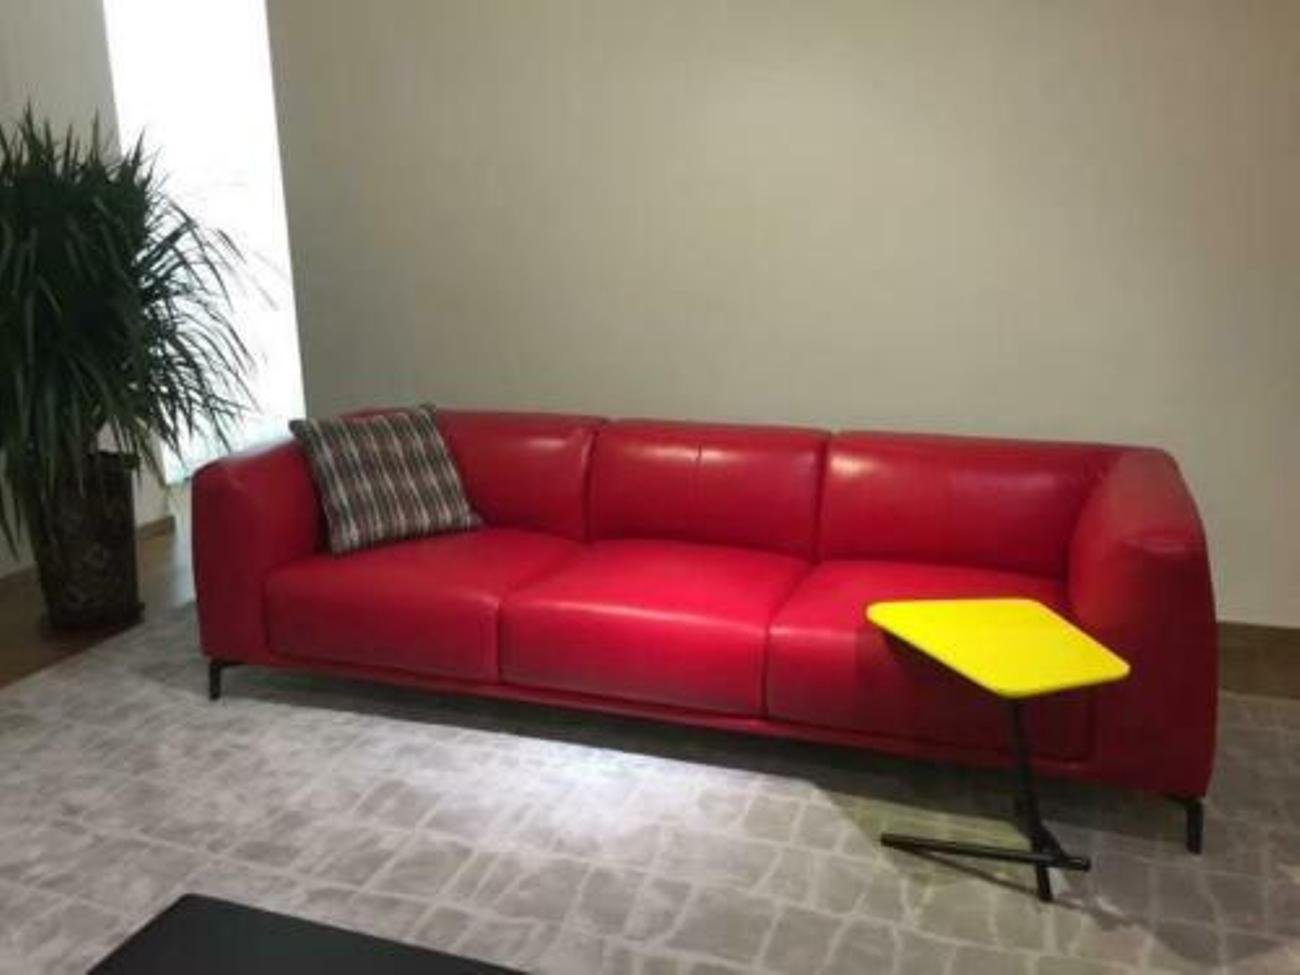 JVmoebel 4-Sitzer, Design XXL Big Sofa Couch Leder Couchen Gelbe 4 Sitzer Polster 255 cm Rot